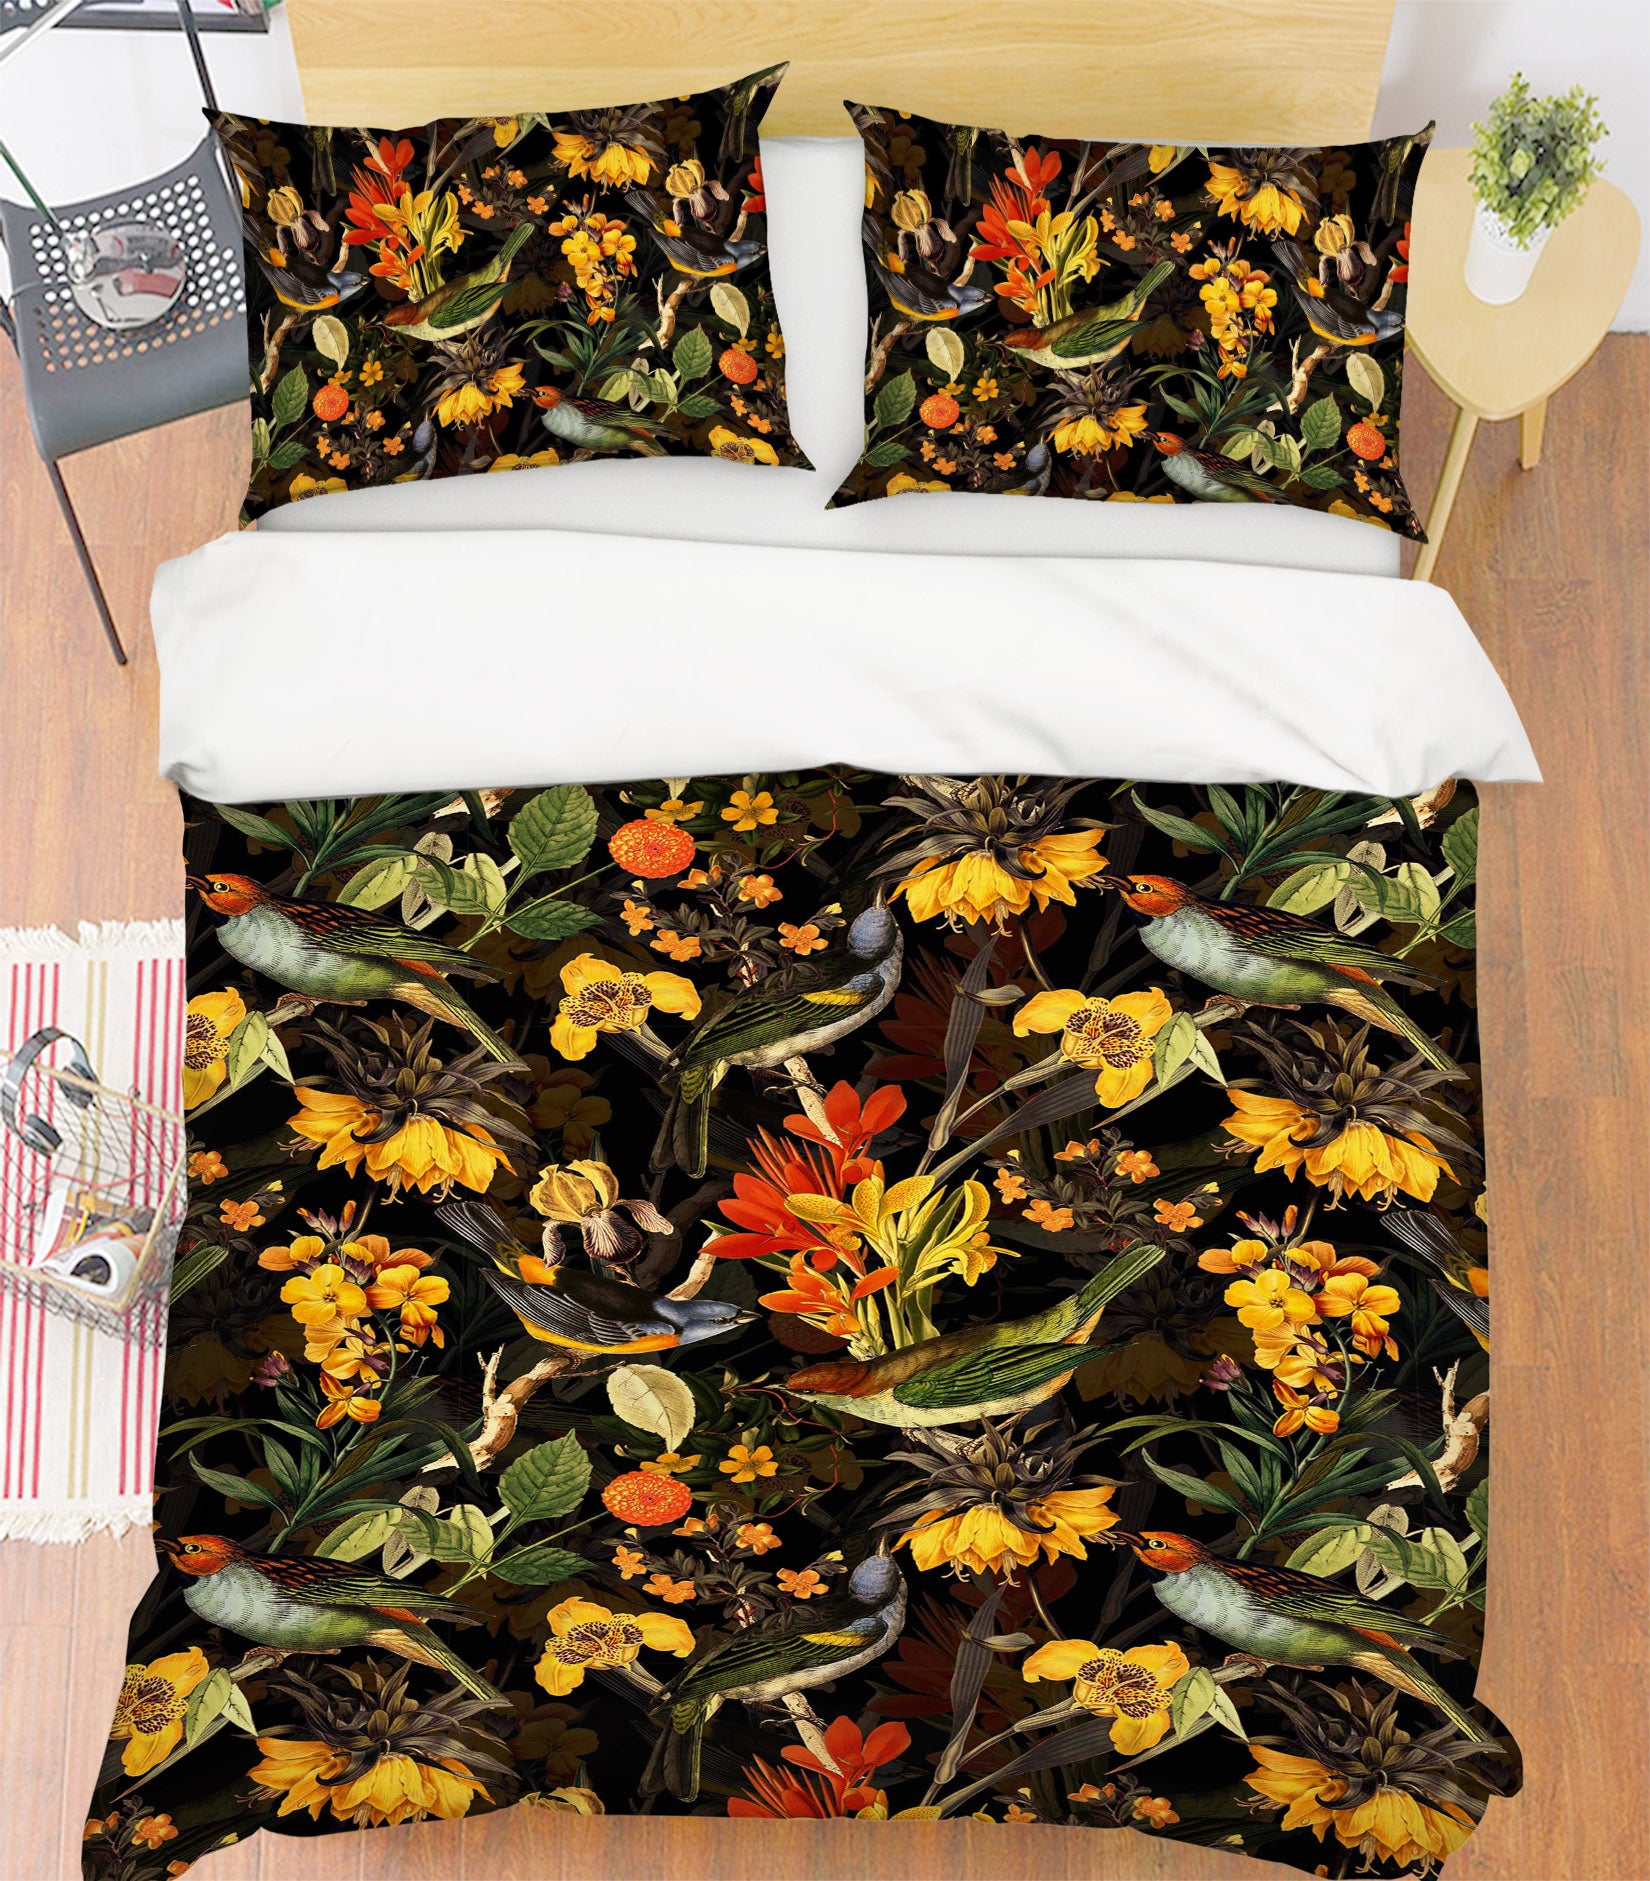 3D Bird Floral 118 Uta Naumann Bedding Bed Pillowcases Quilt